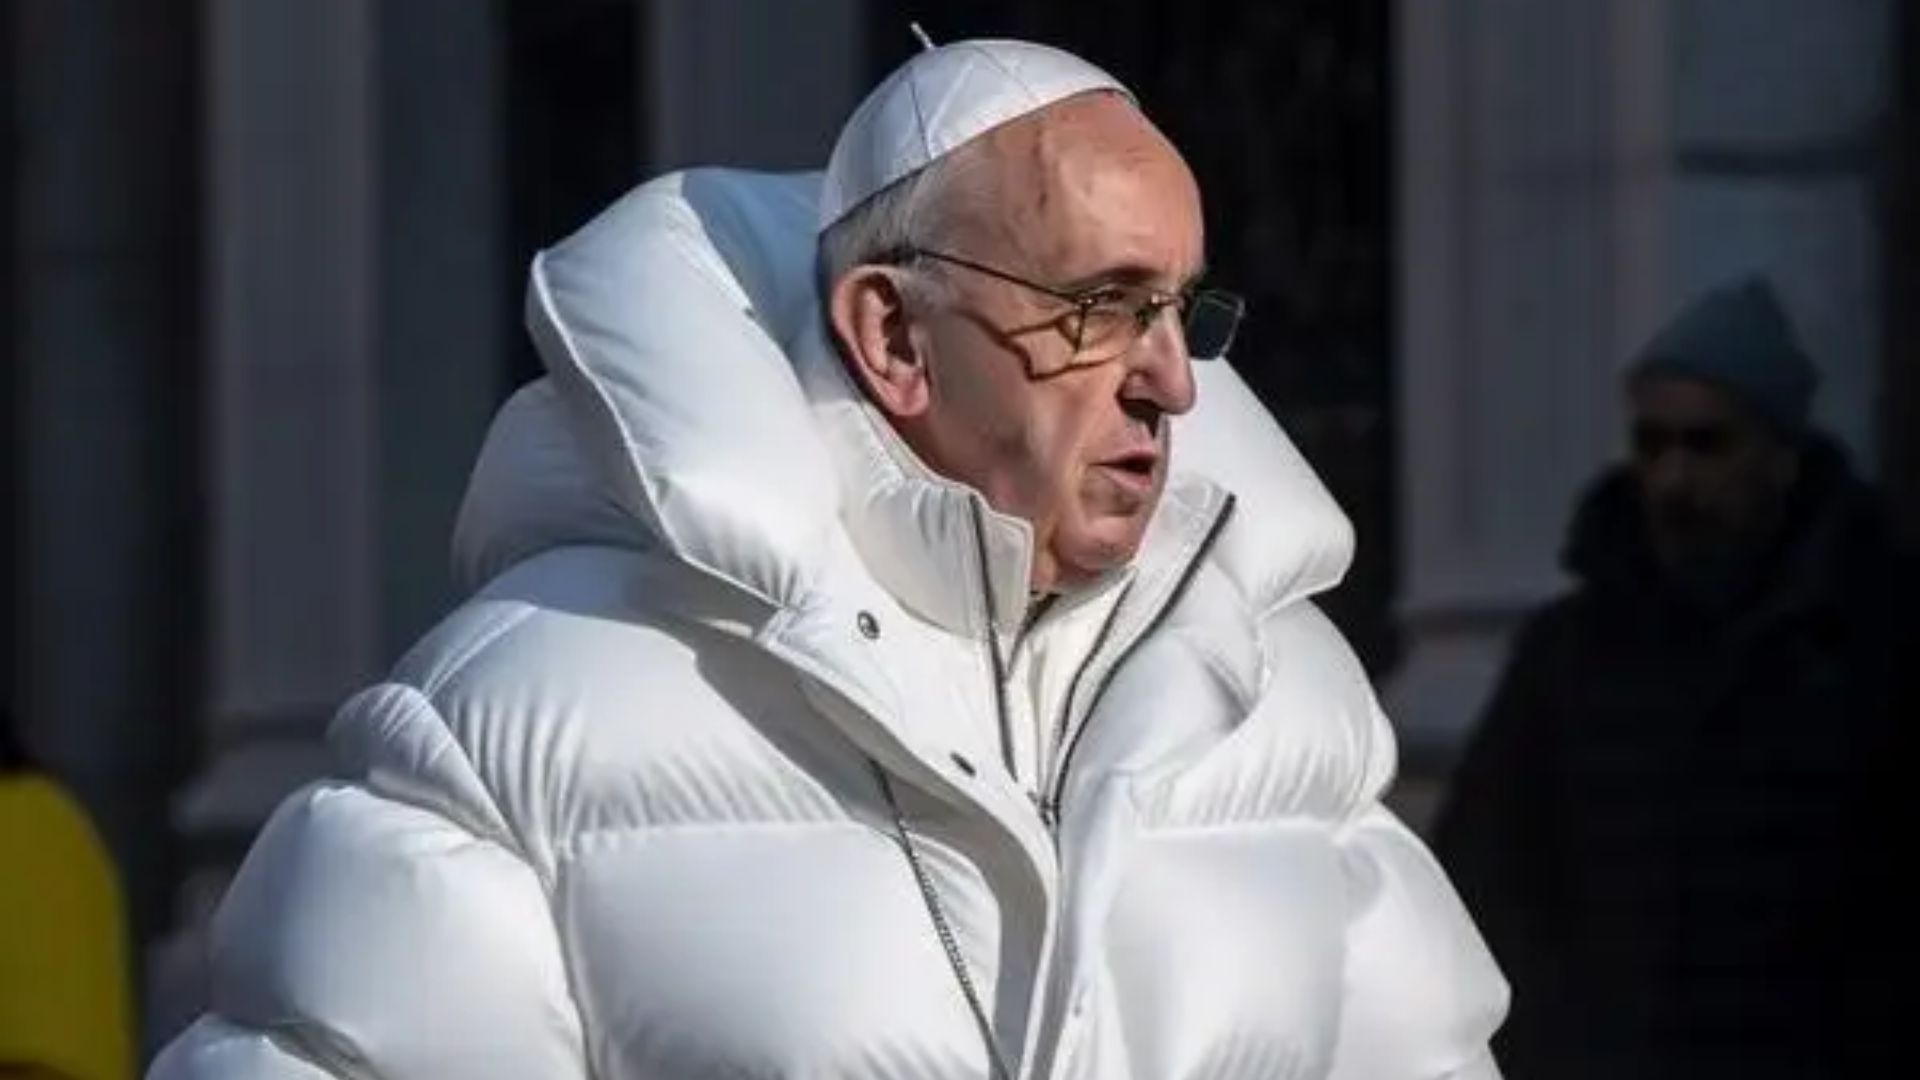 Criador de imagem viral do papa se manifesta pela primeira vez e se diz assustado com repercussão: “Fiquei pasmo”